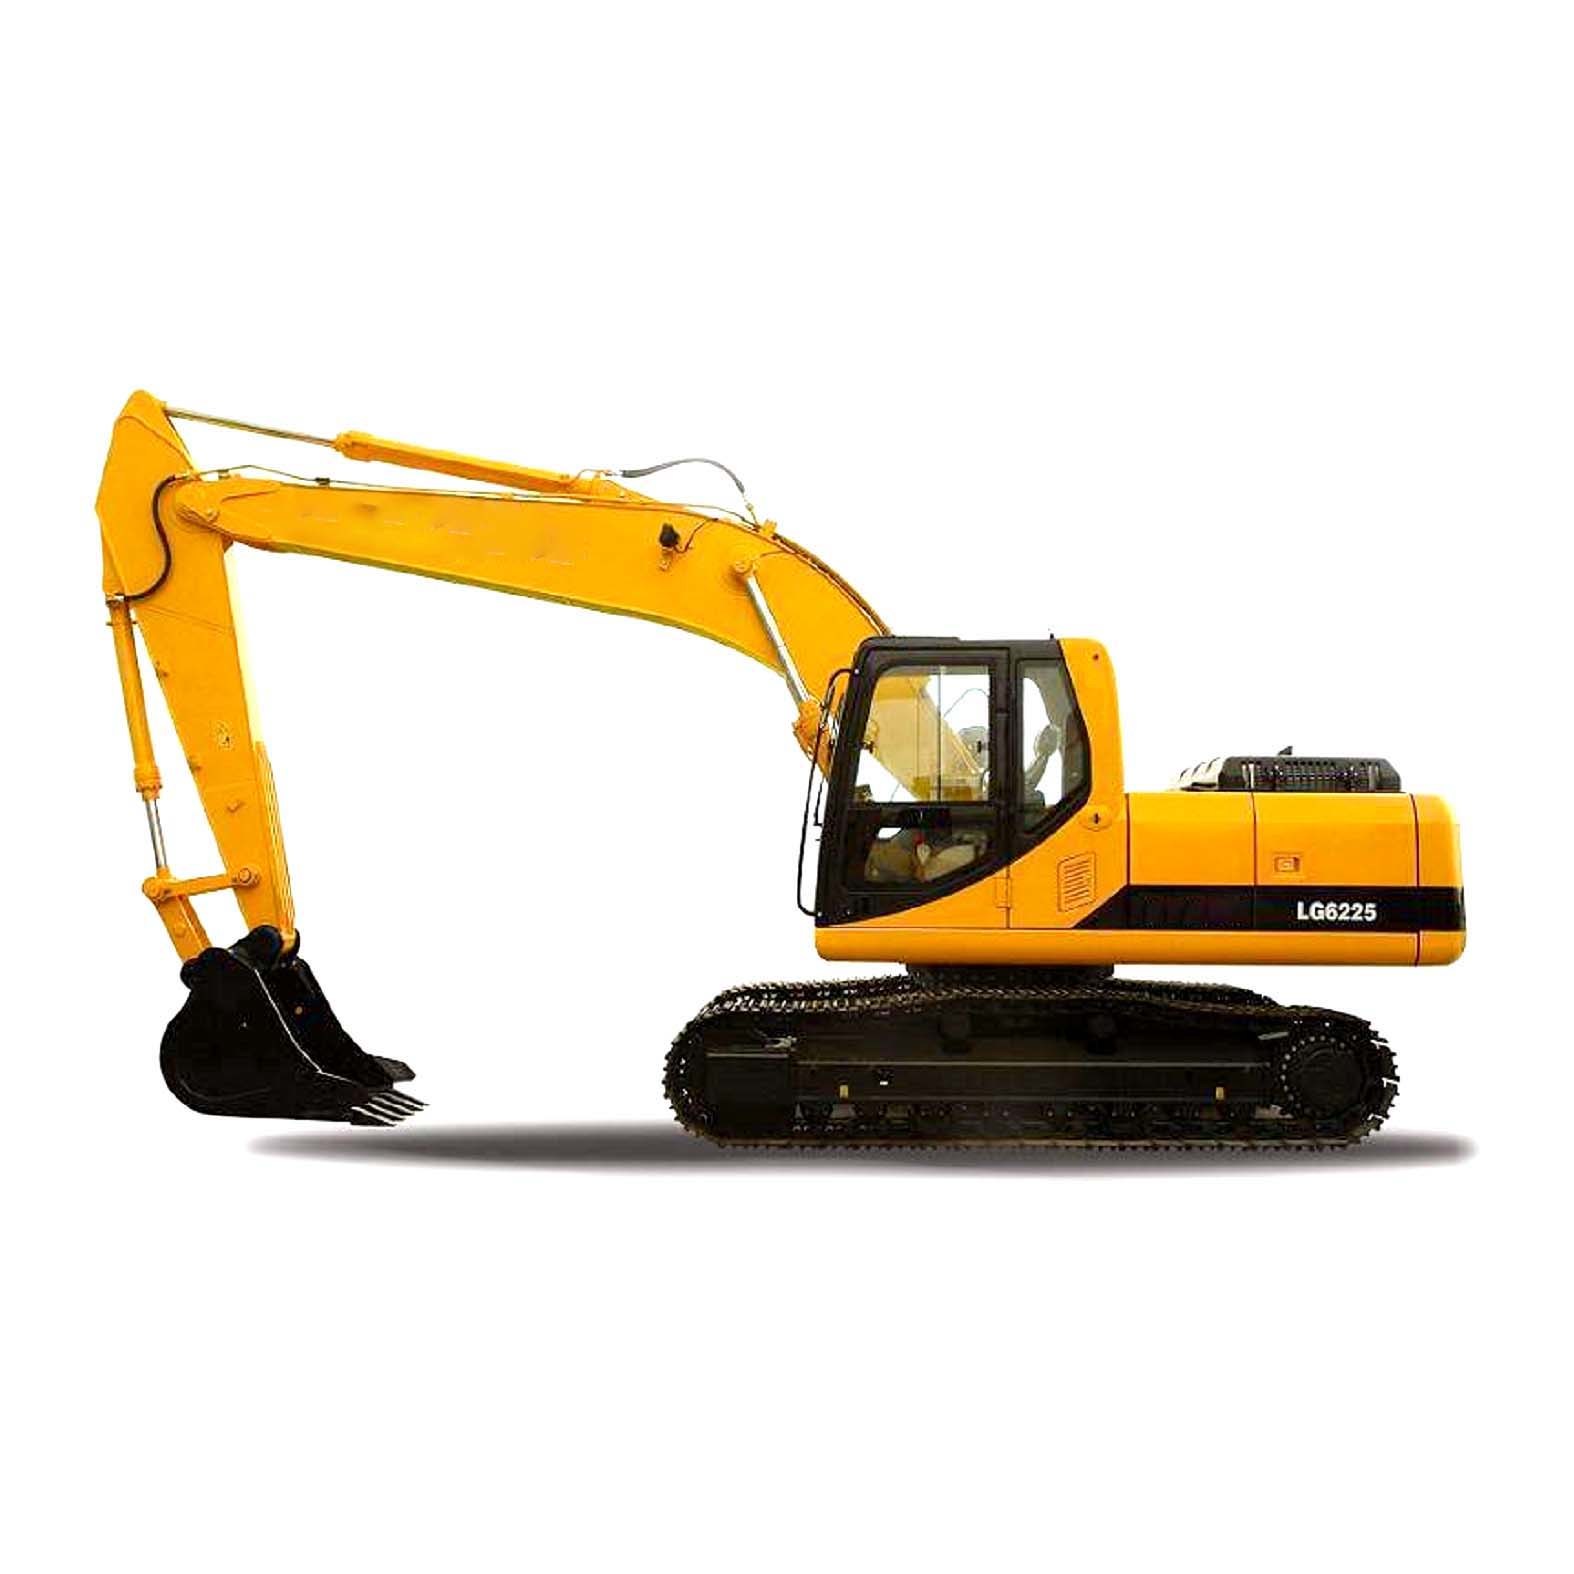 22ton Medium Crawler Excavator for Sale